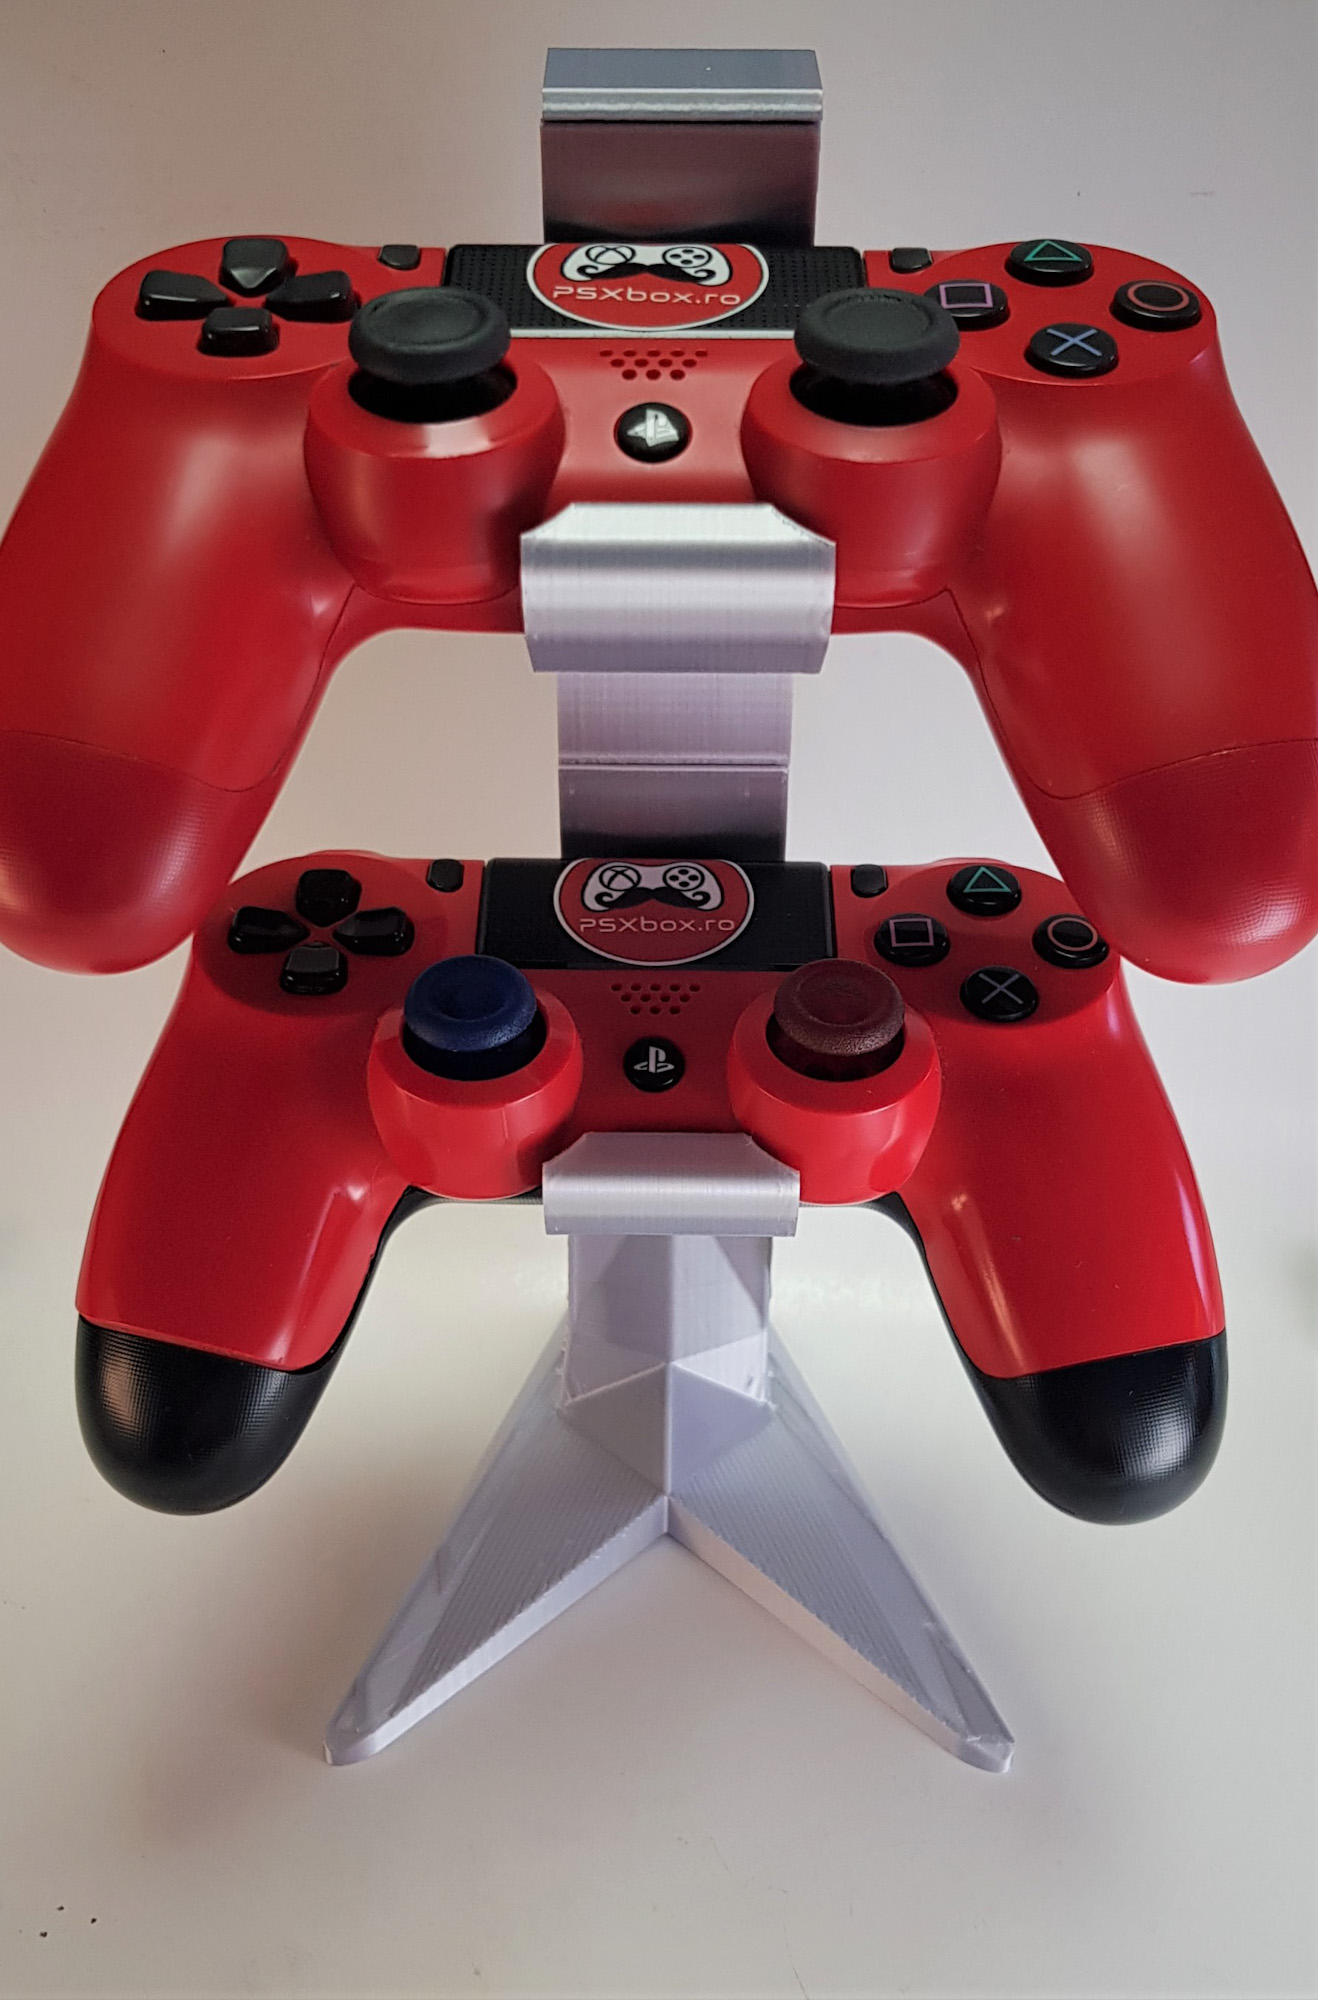 Suport Controllere PS4 dublu - 3D Print. Printeaza-ti proiectul 3d tau sau alege dintre proiectele special culese pentru tine.